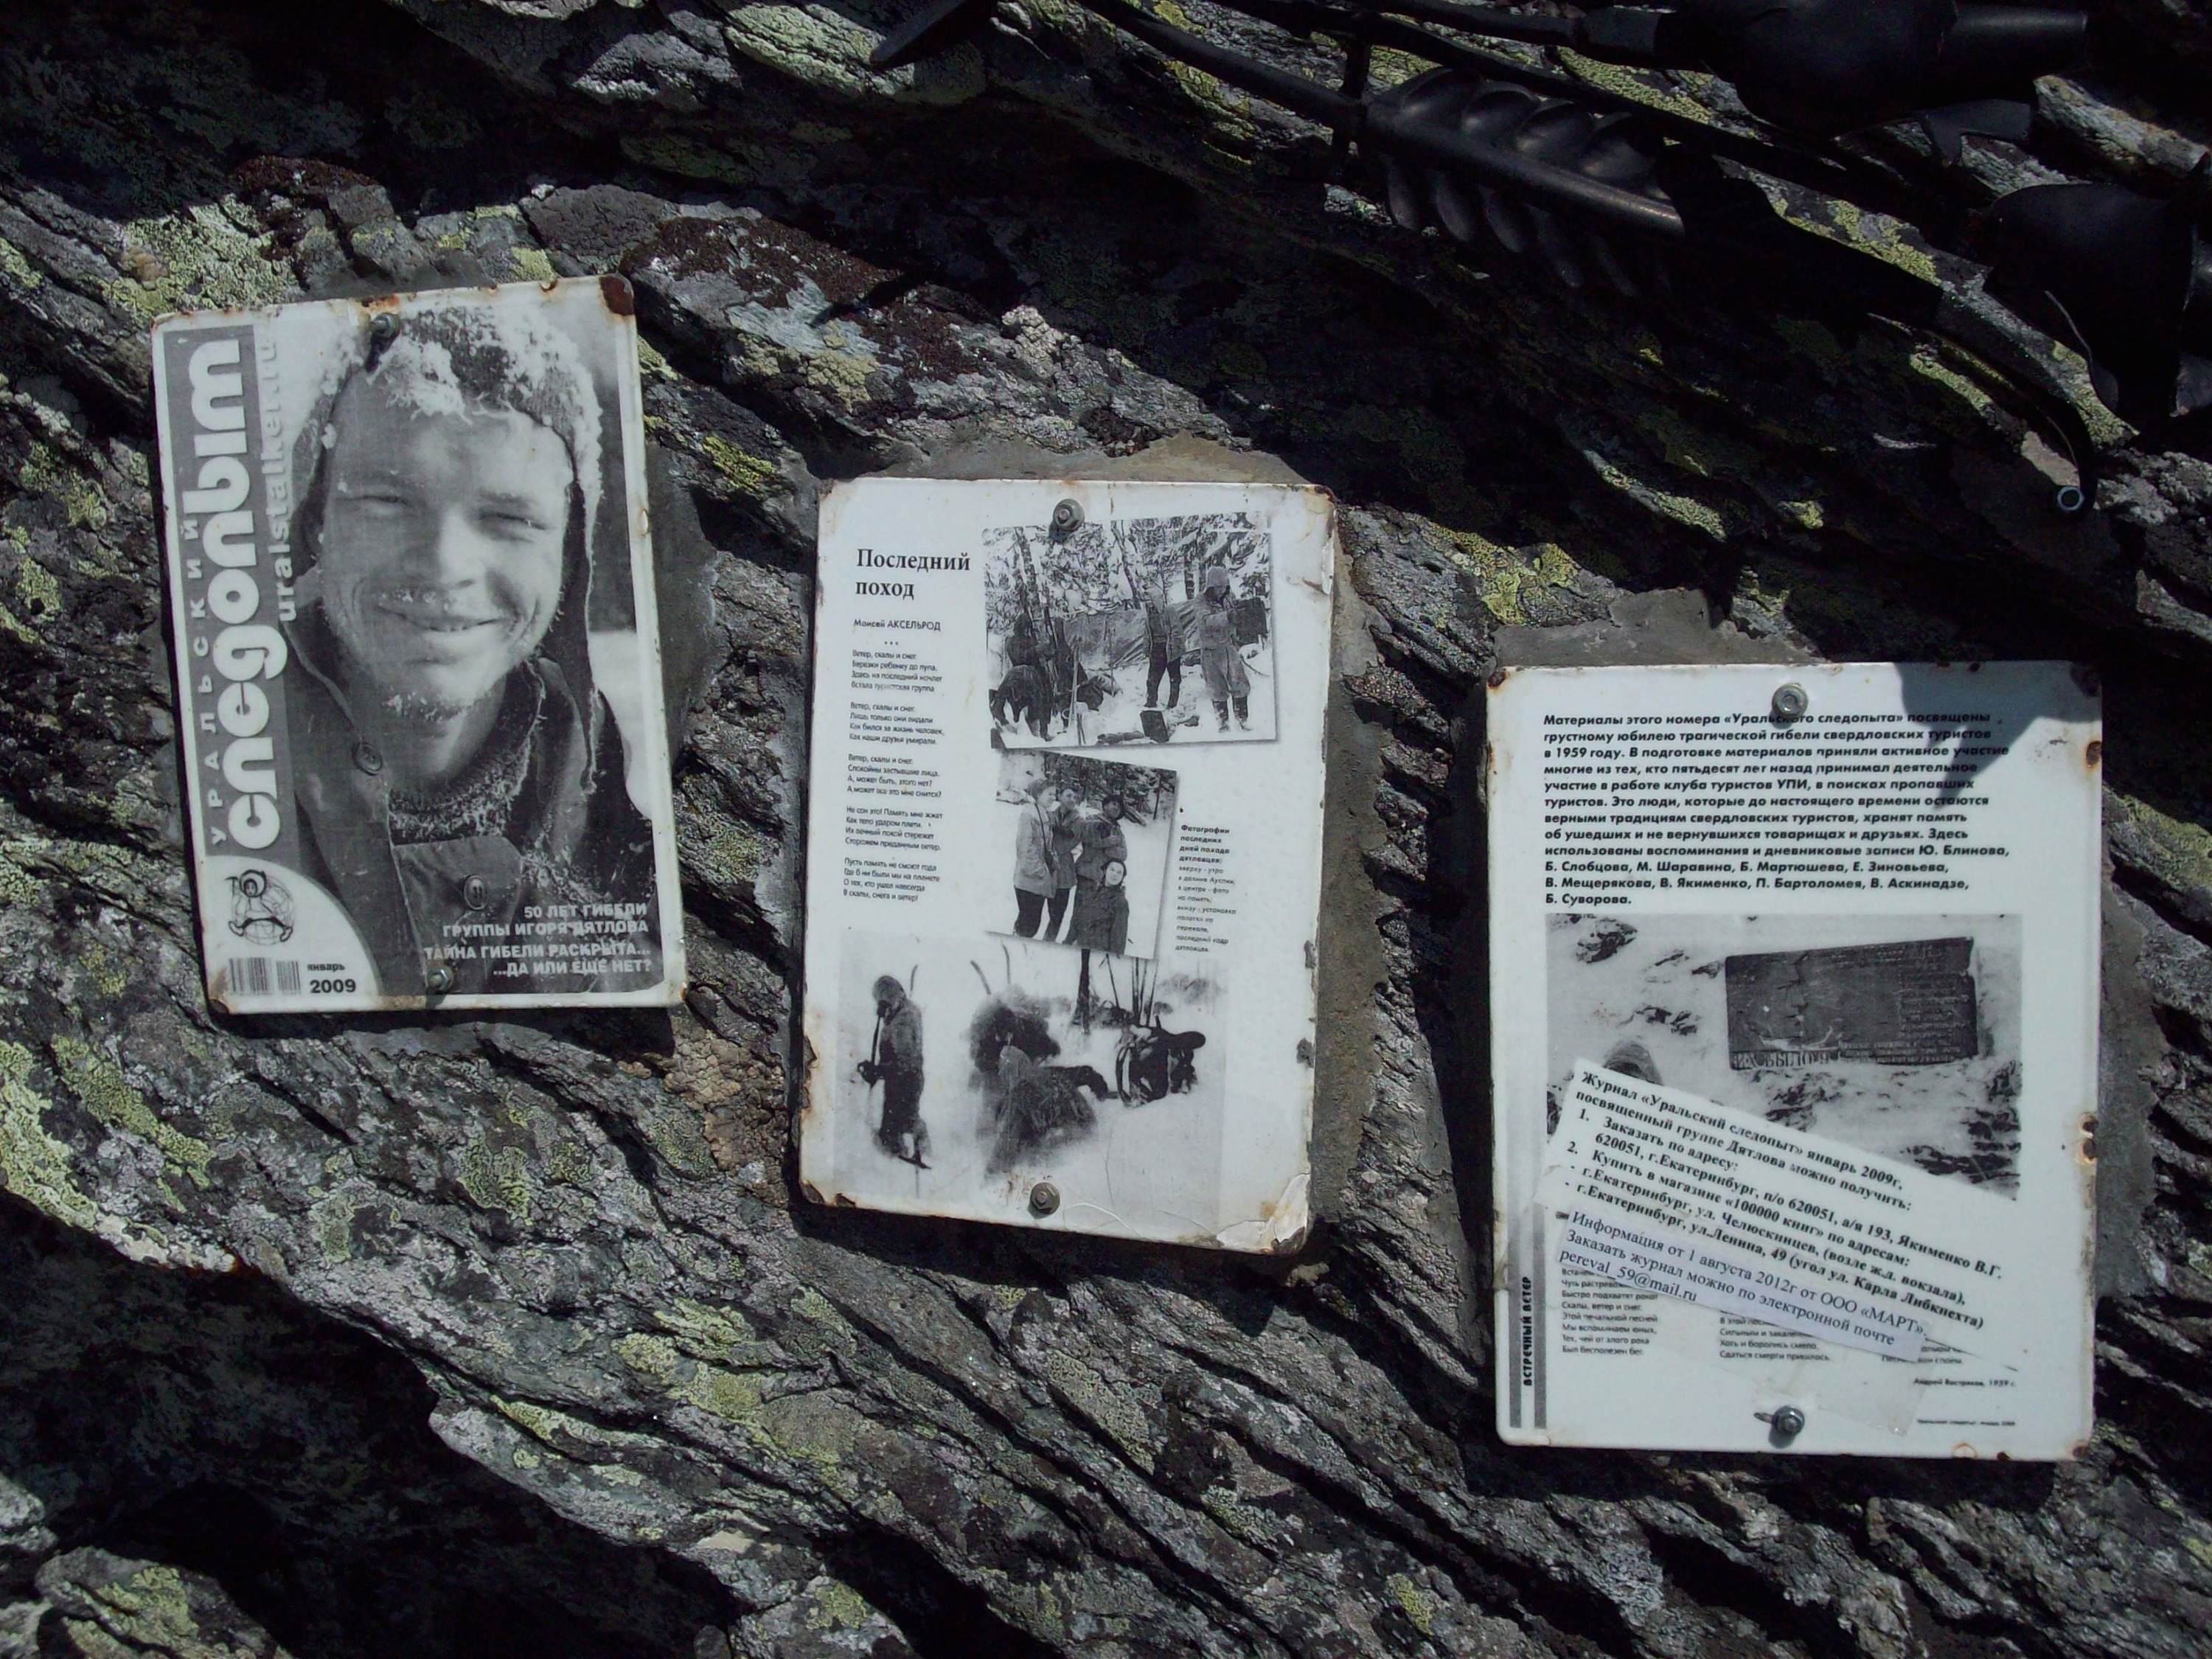 Это страницы из журнала «Уральский следопыт», посвященные гибели тургруппы. Они прикреплены к скале возле перевала Дятлова